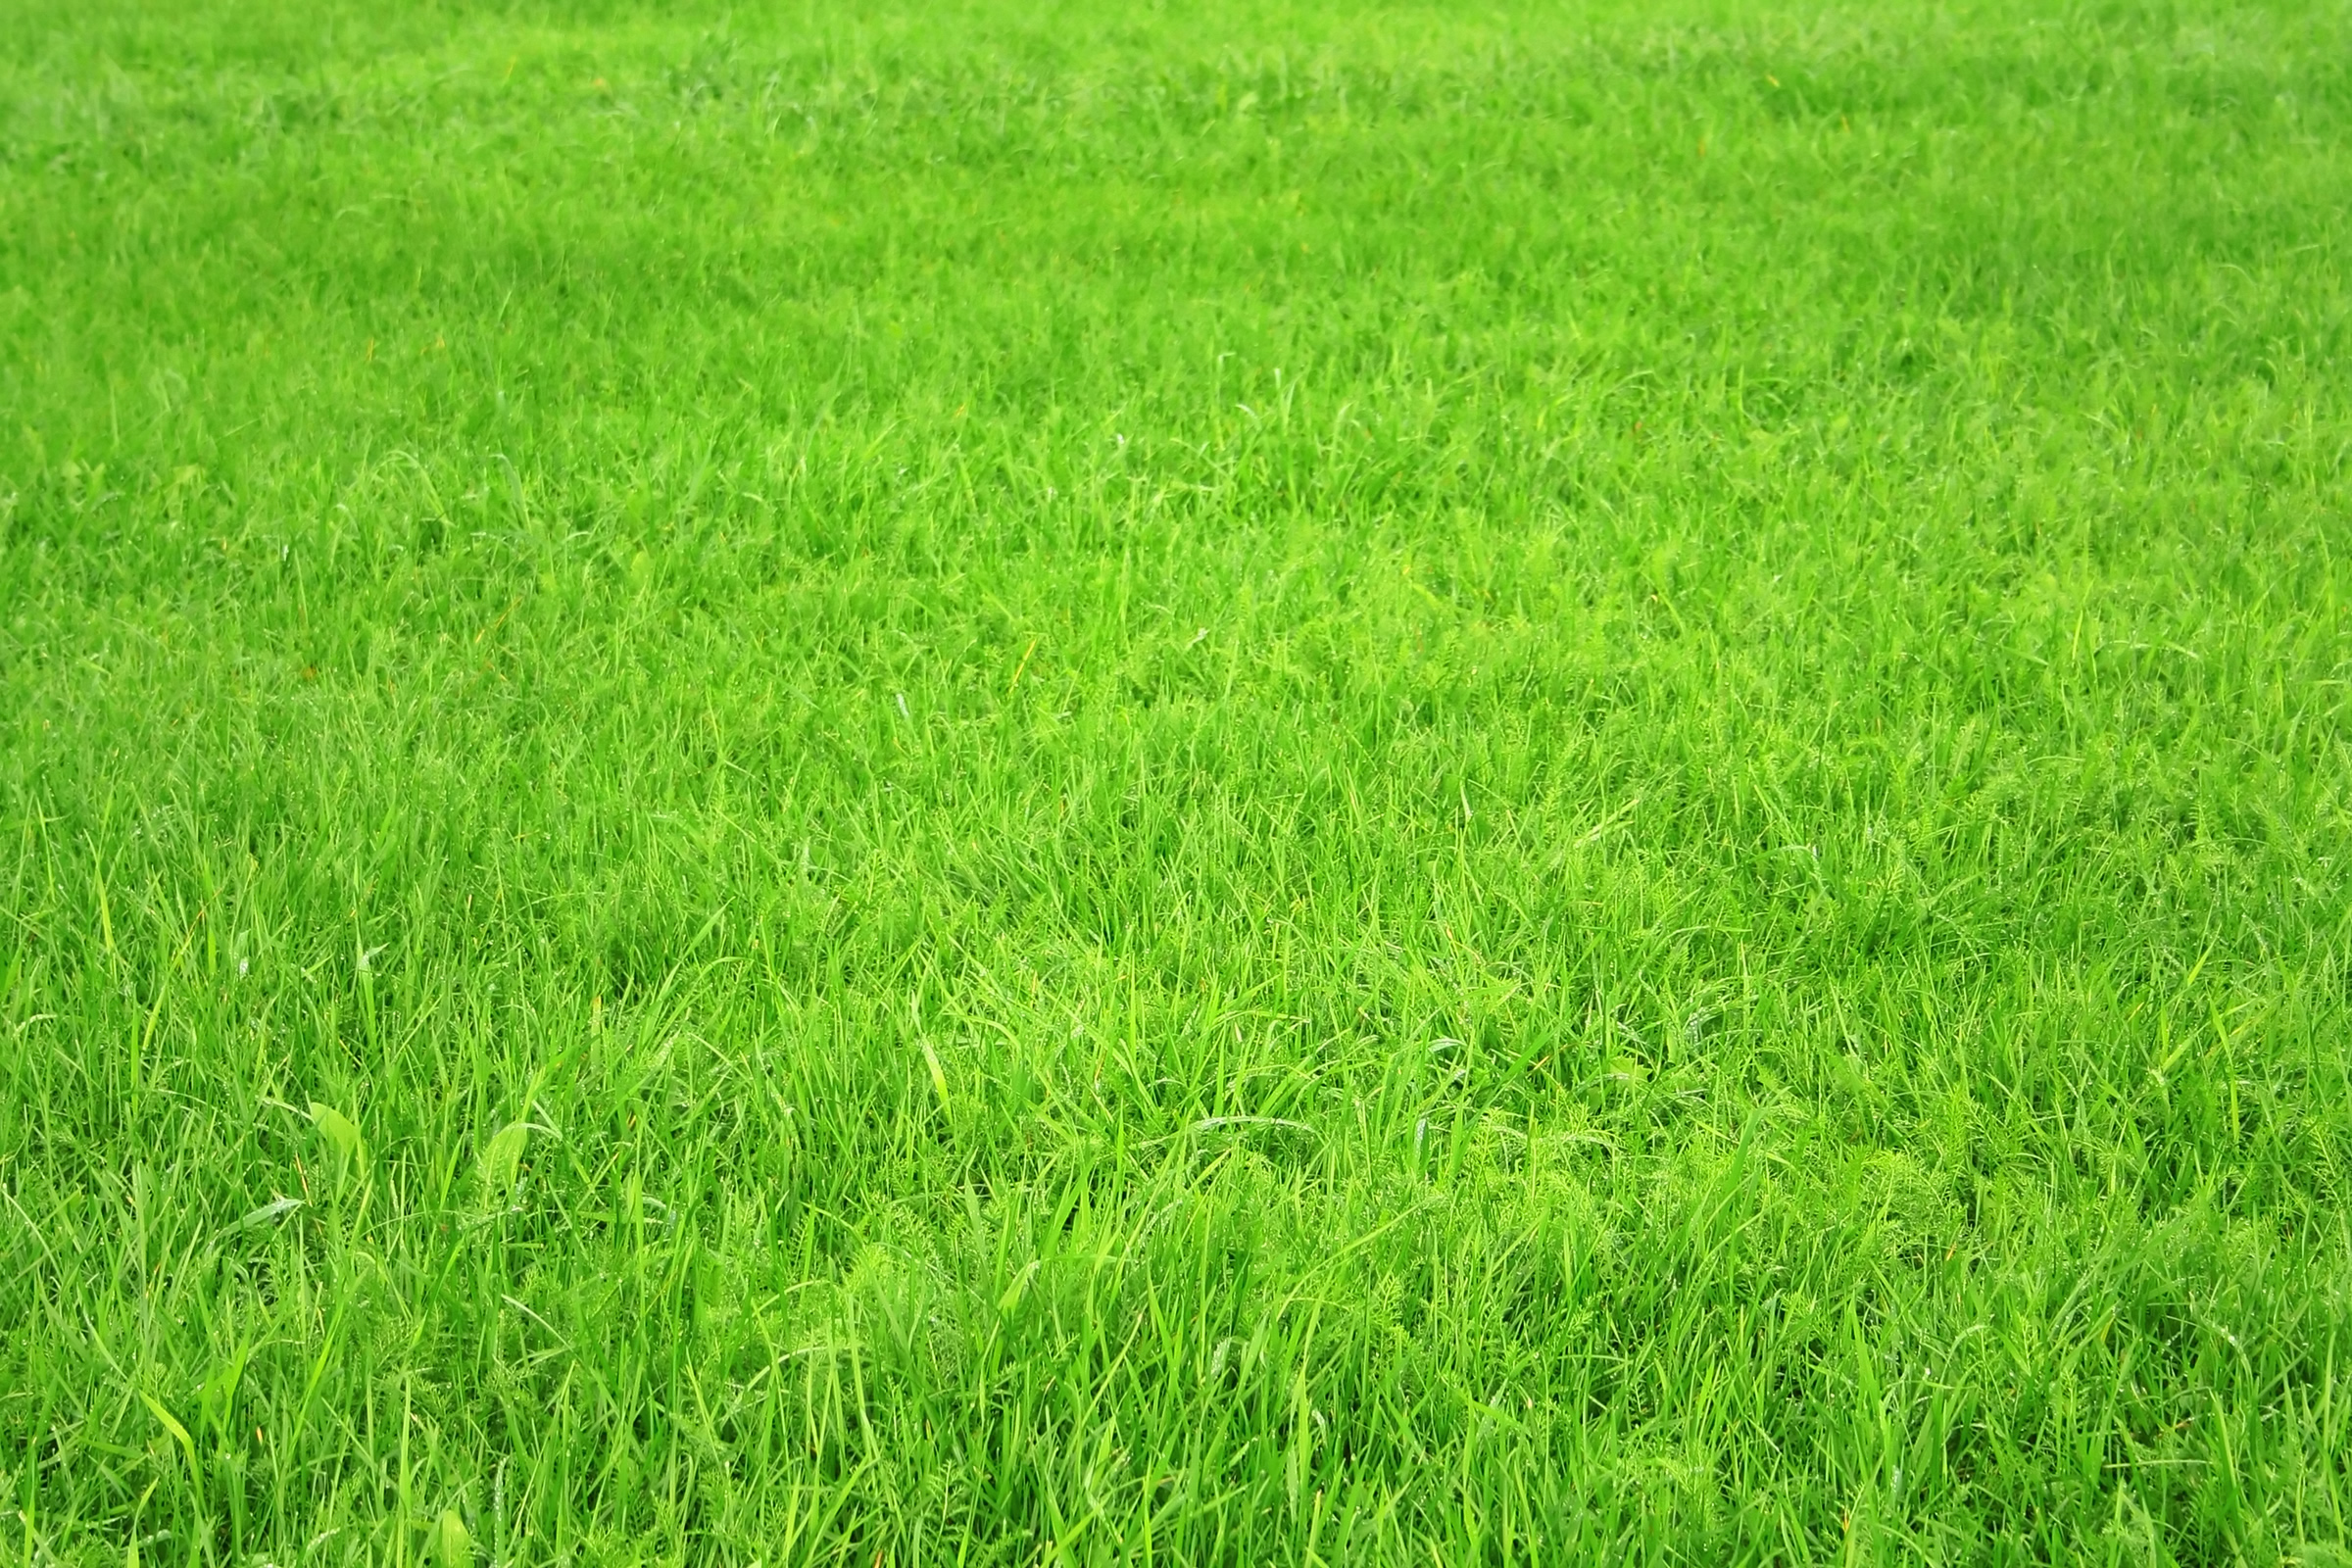 Download wallpaper green Grass texture grass desktop